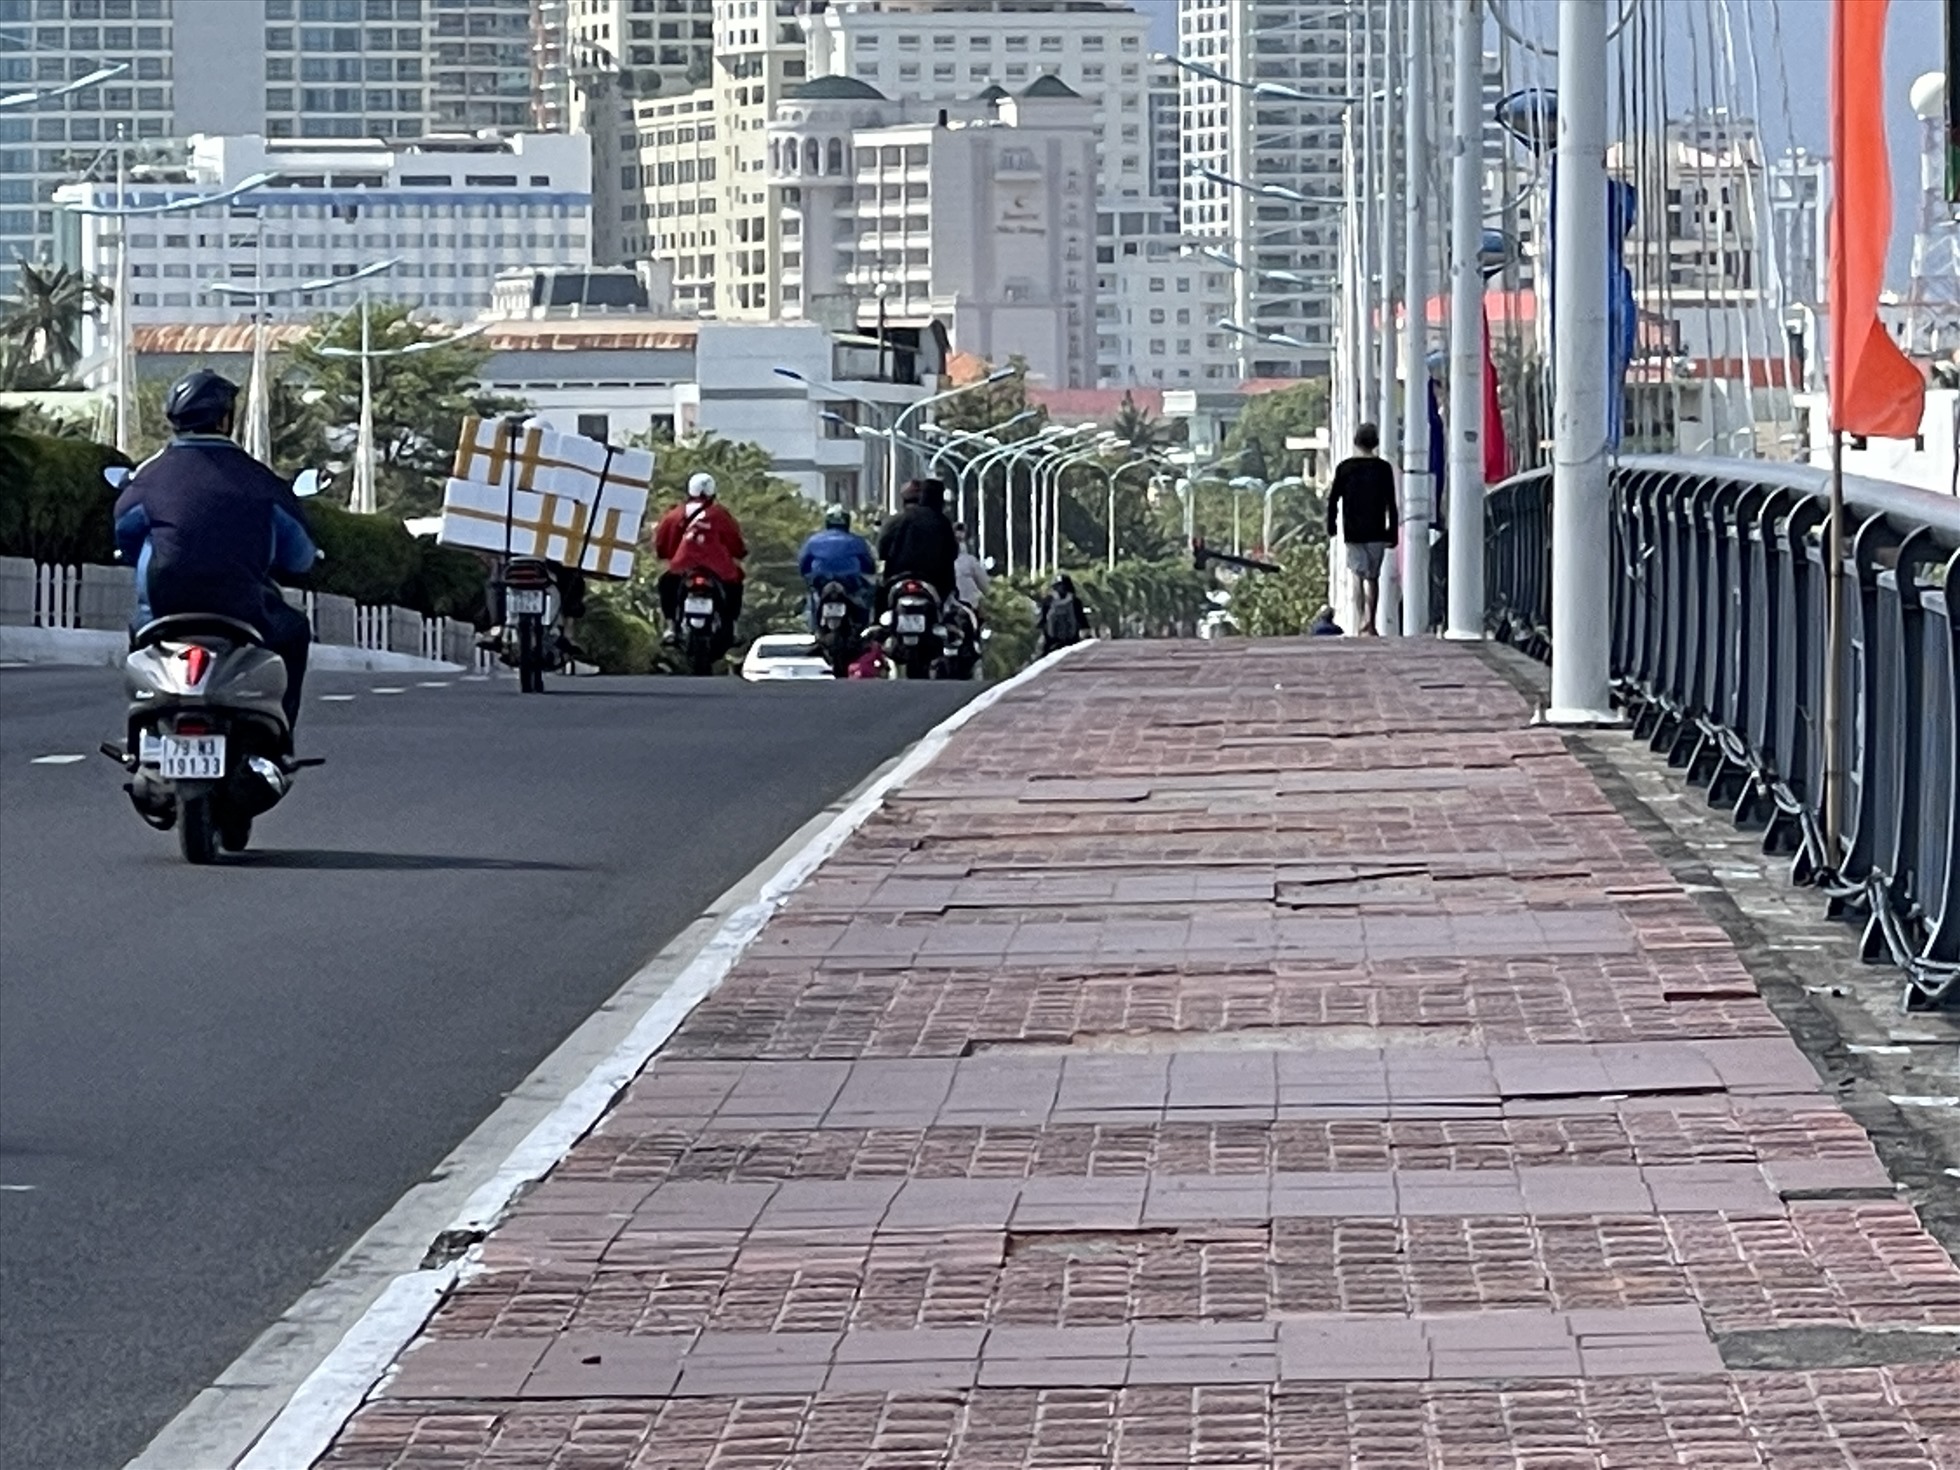 Nhiều người dân bức xúc bởi cầu Trần Phú xuống cấp nhưng địa phương chưa sửa chữa. Ảnh: Hữu Long